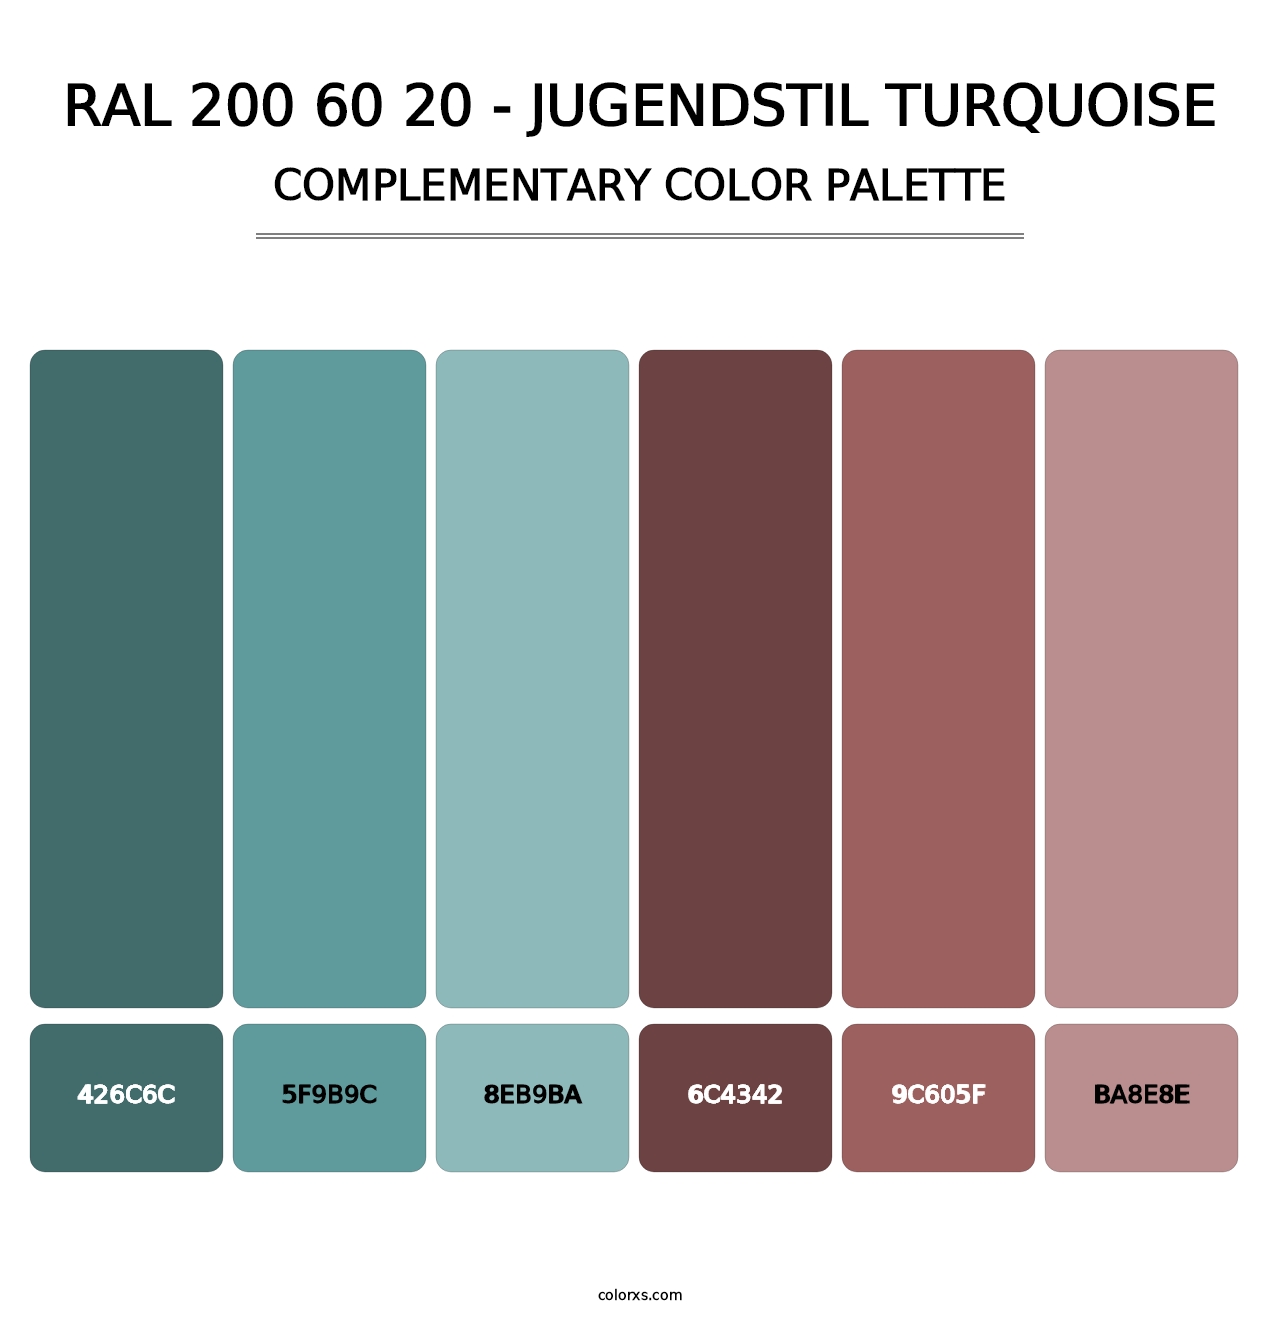 RAL 200 60 20 - Jugendstil Turquoise - Complementary Color Palette